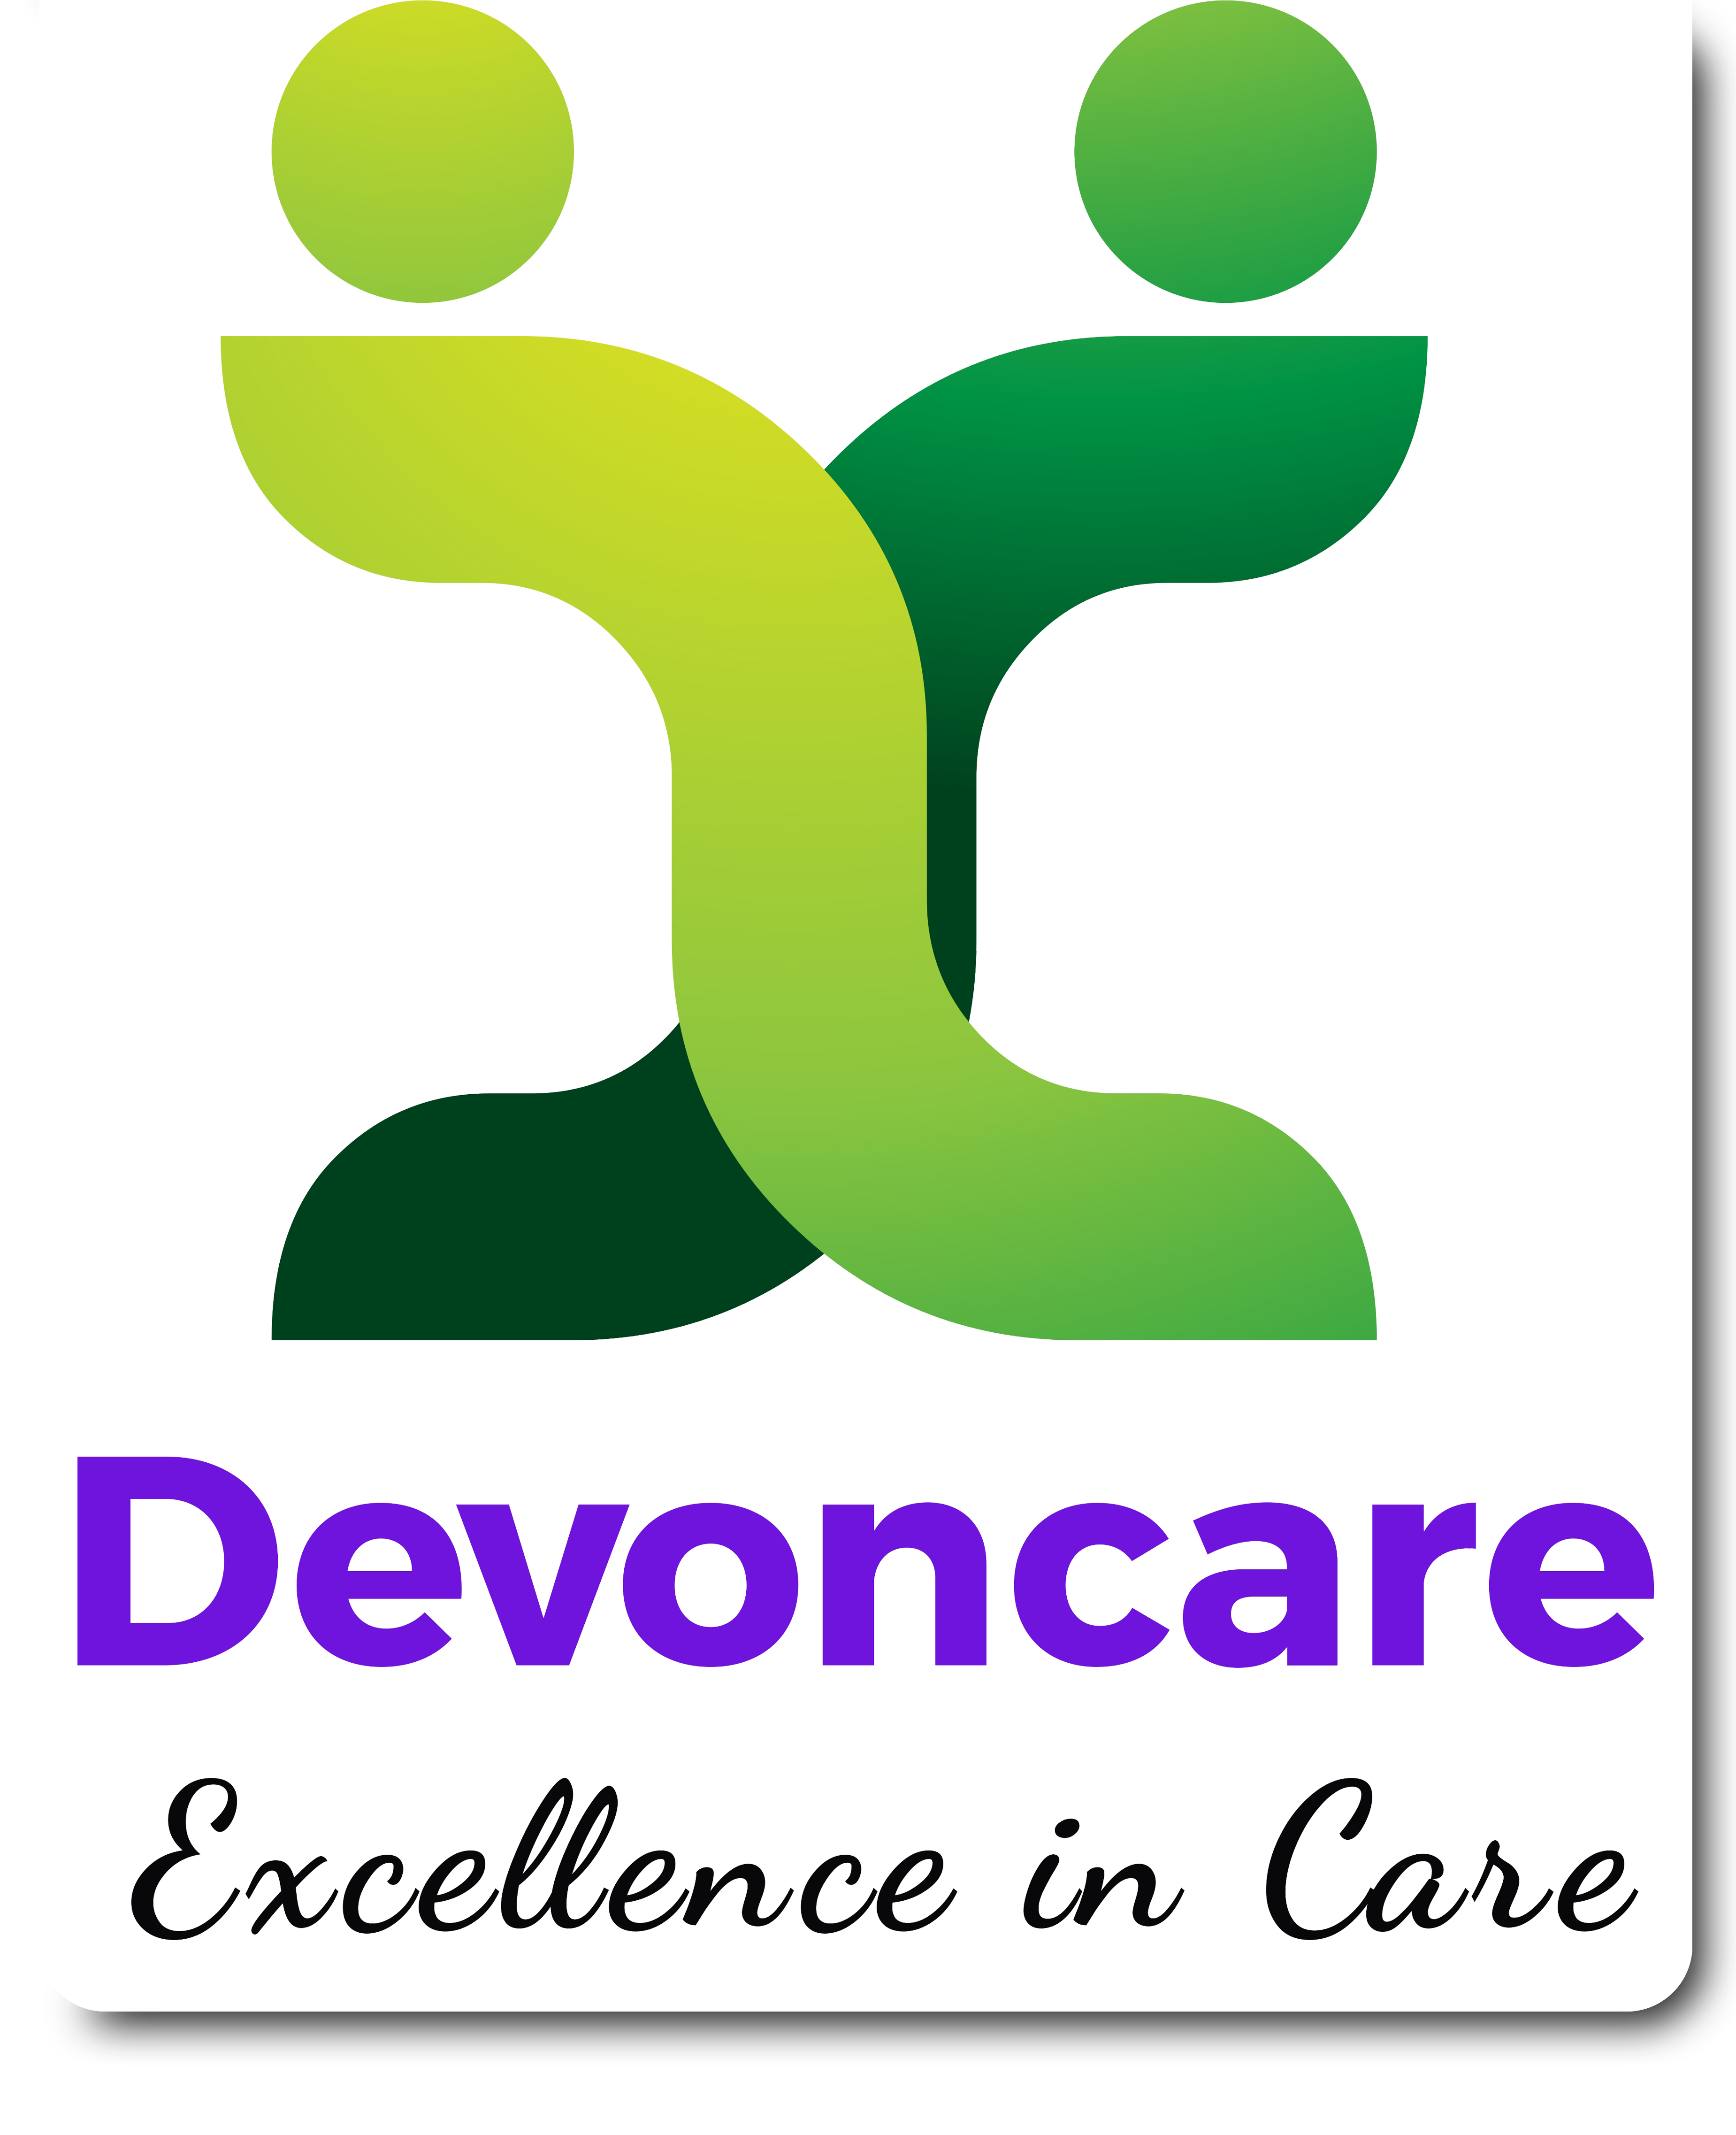 Personal Care Devoncare